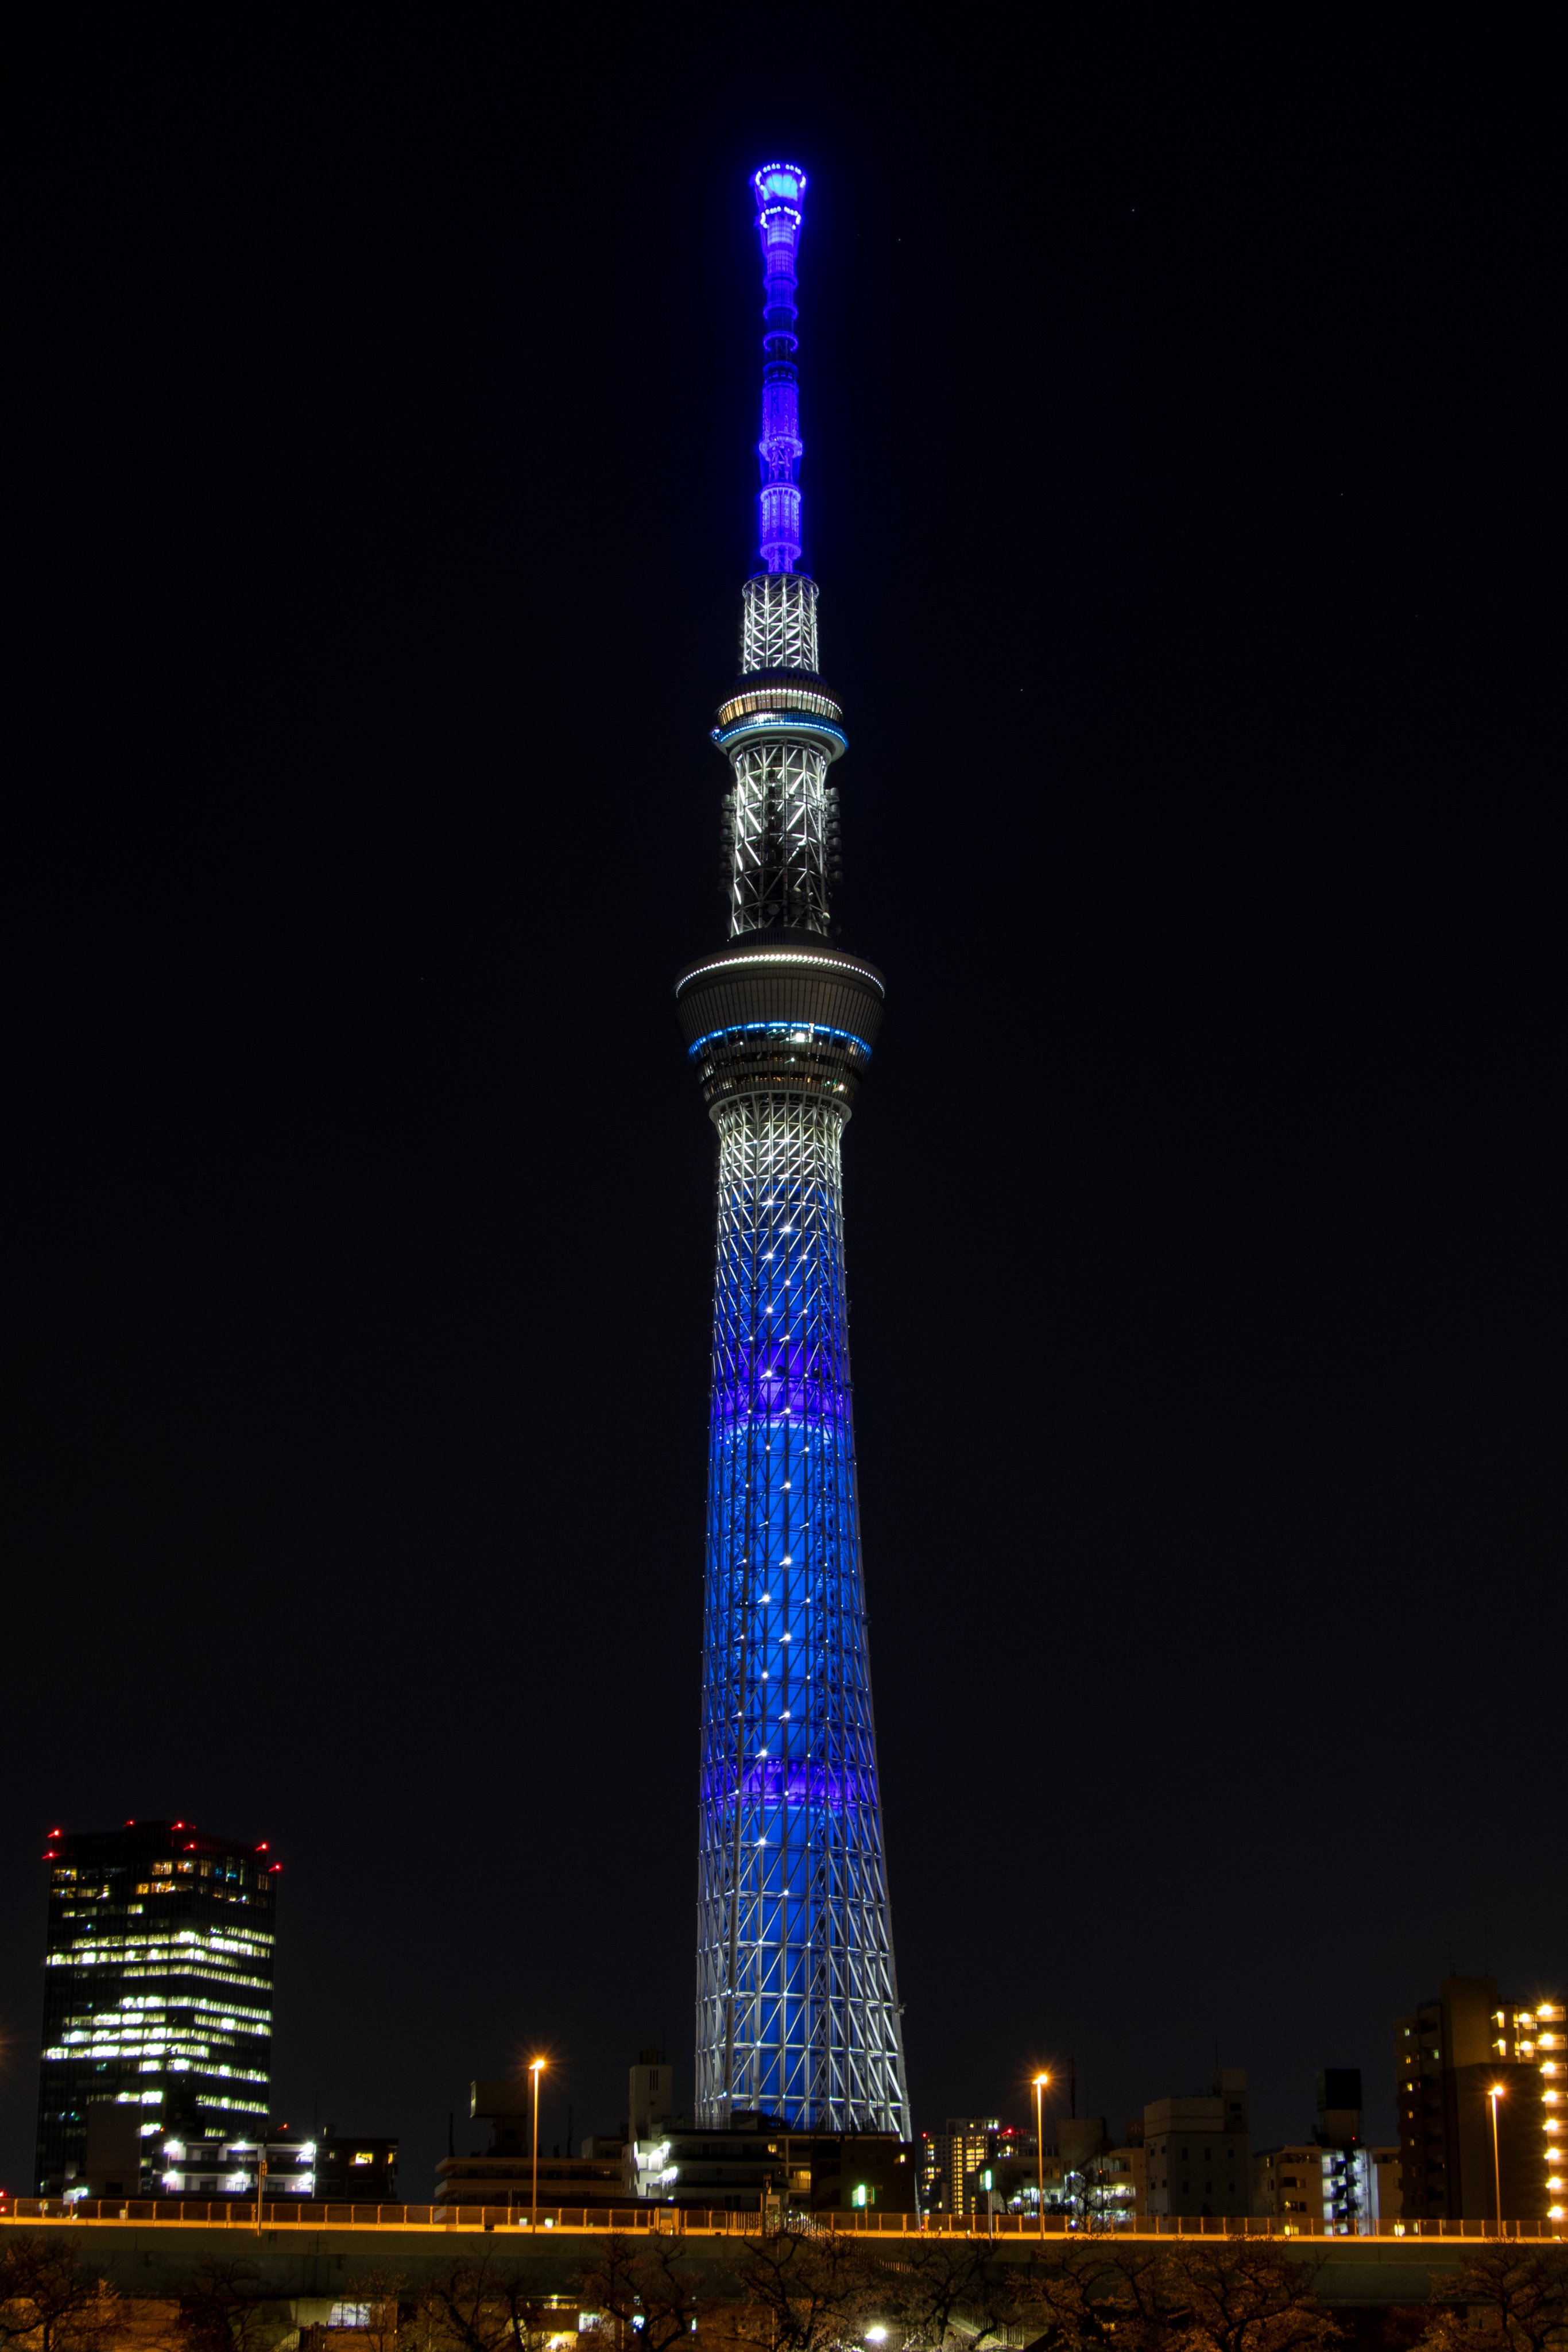 スカイツリー Tokyo Skytree Together We Can All Win 今日から4 5 日 まで 新型コロナウイルス感染症に 世界が一丸となって立ち向かい みんなで打ち勝とう という思いを込めて 地球をイメージした青色の特別ライティング そしてレーザー